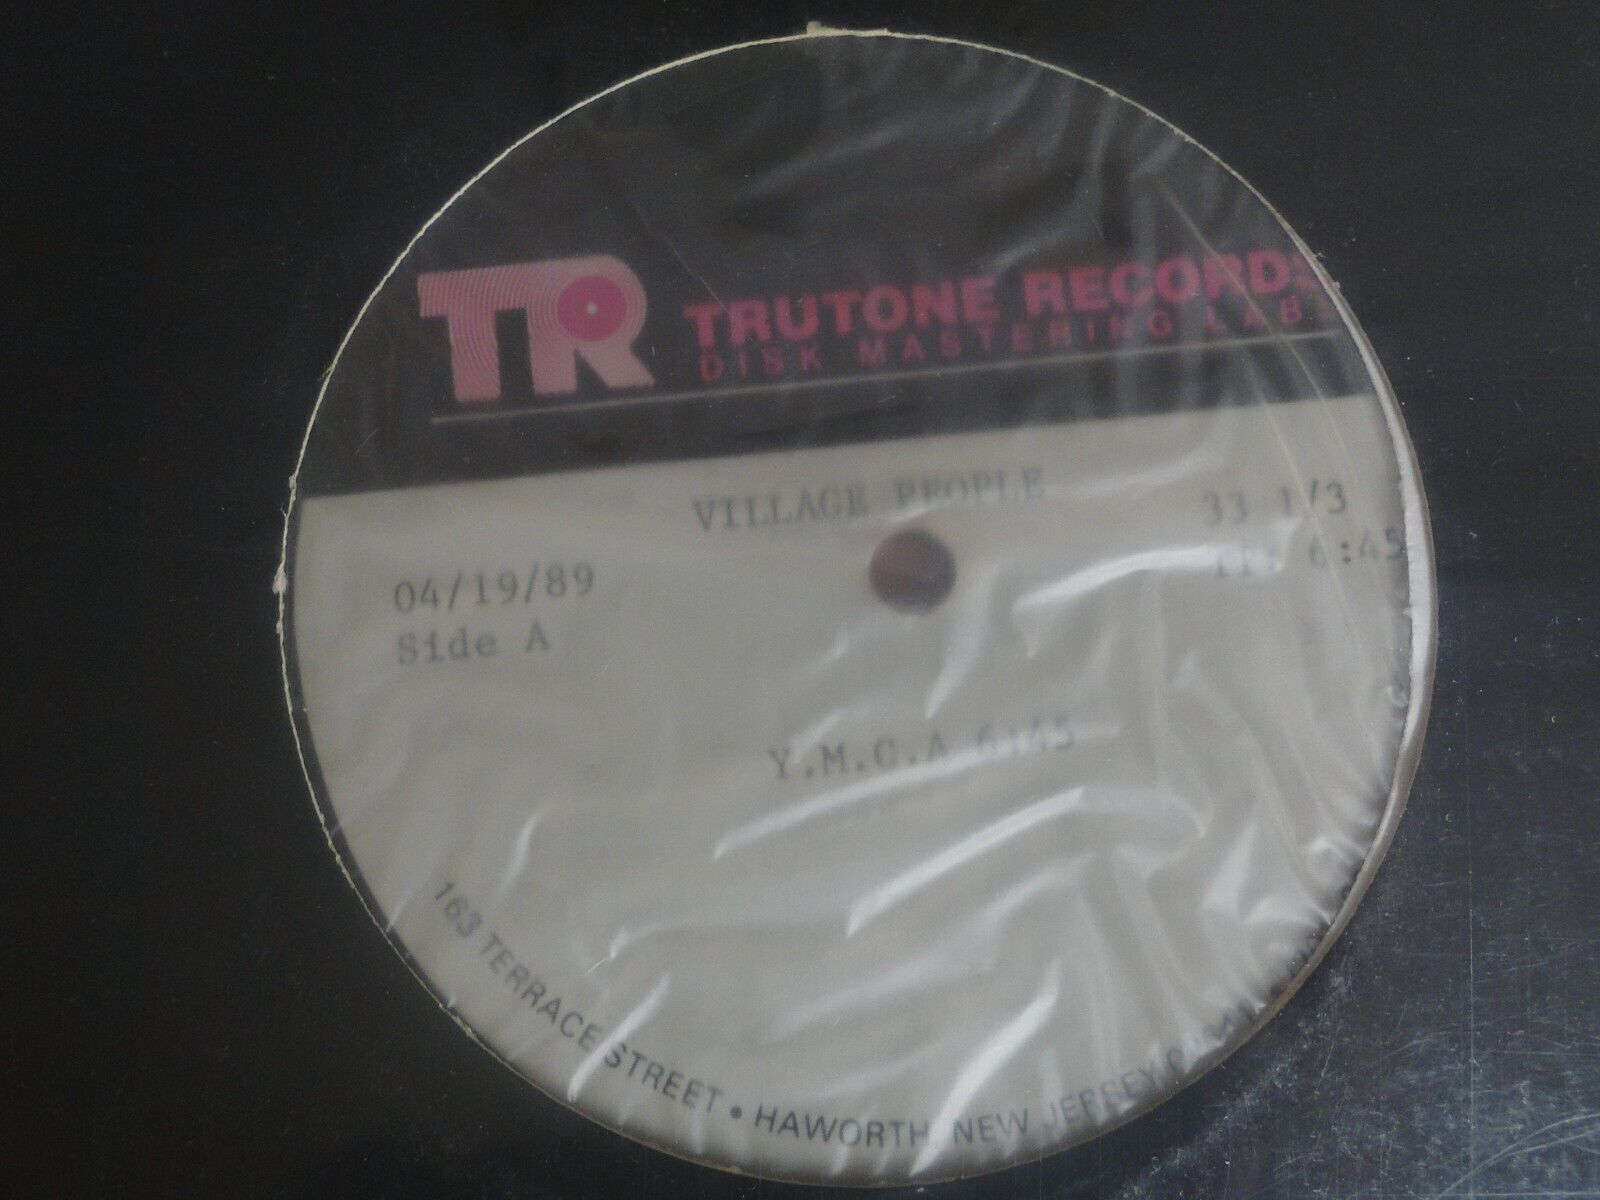 Vintage Trutone Records Disk Mastering Labs Village People Single Y.M.C.A.